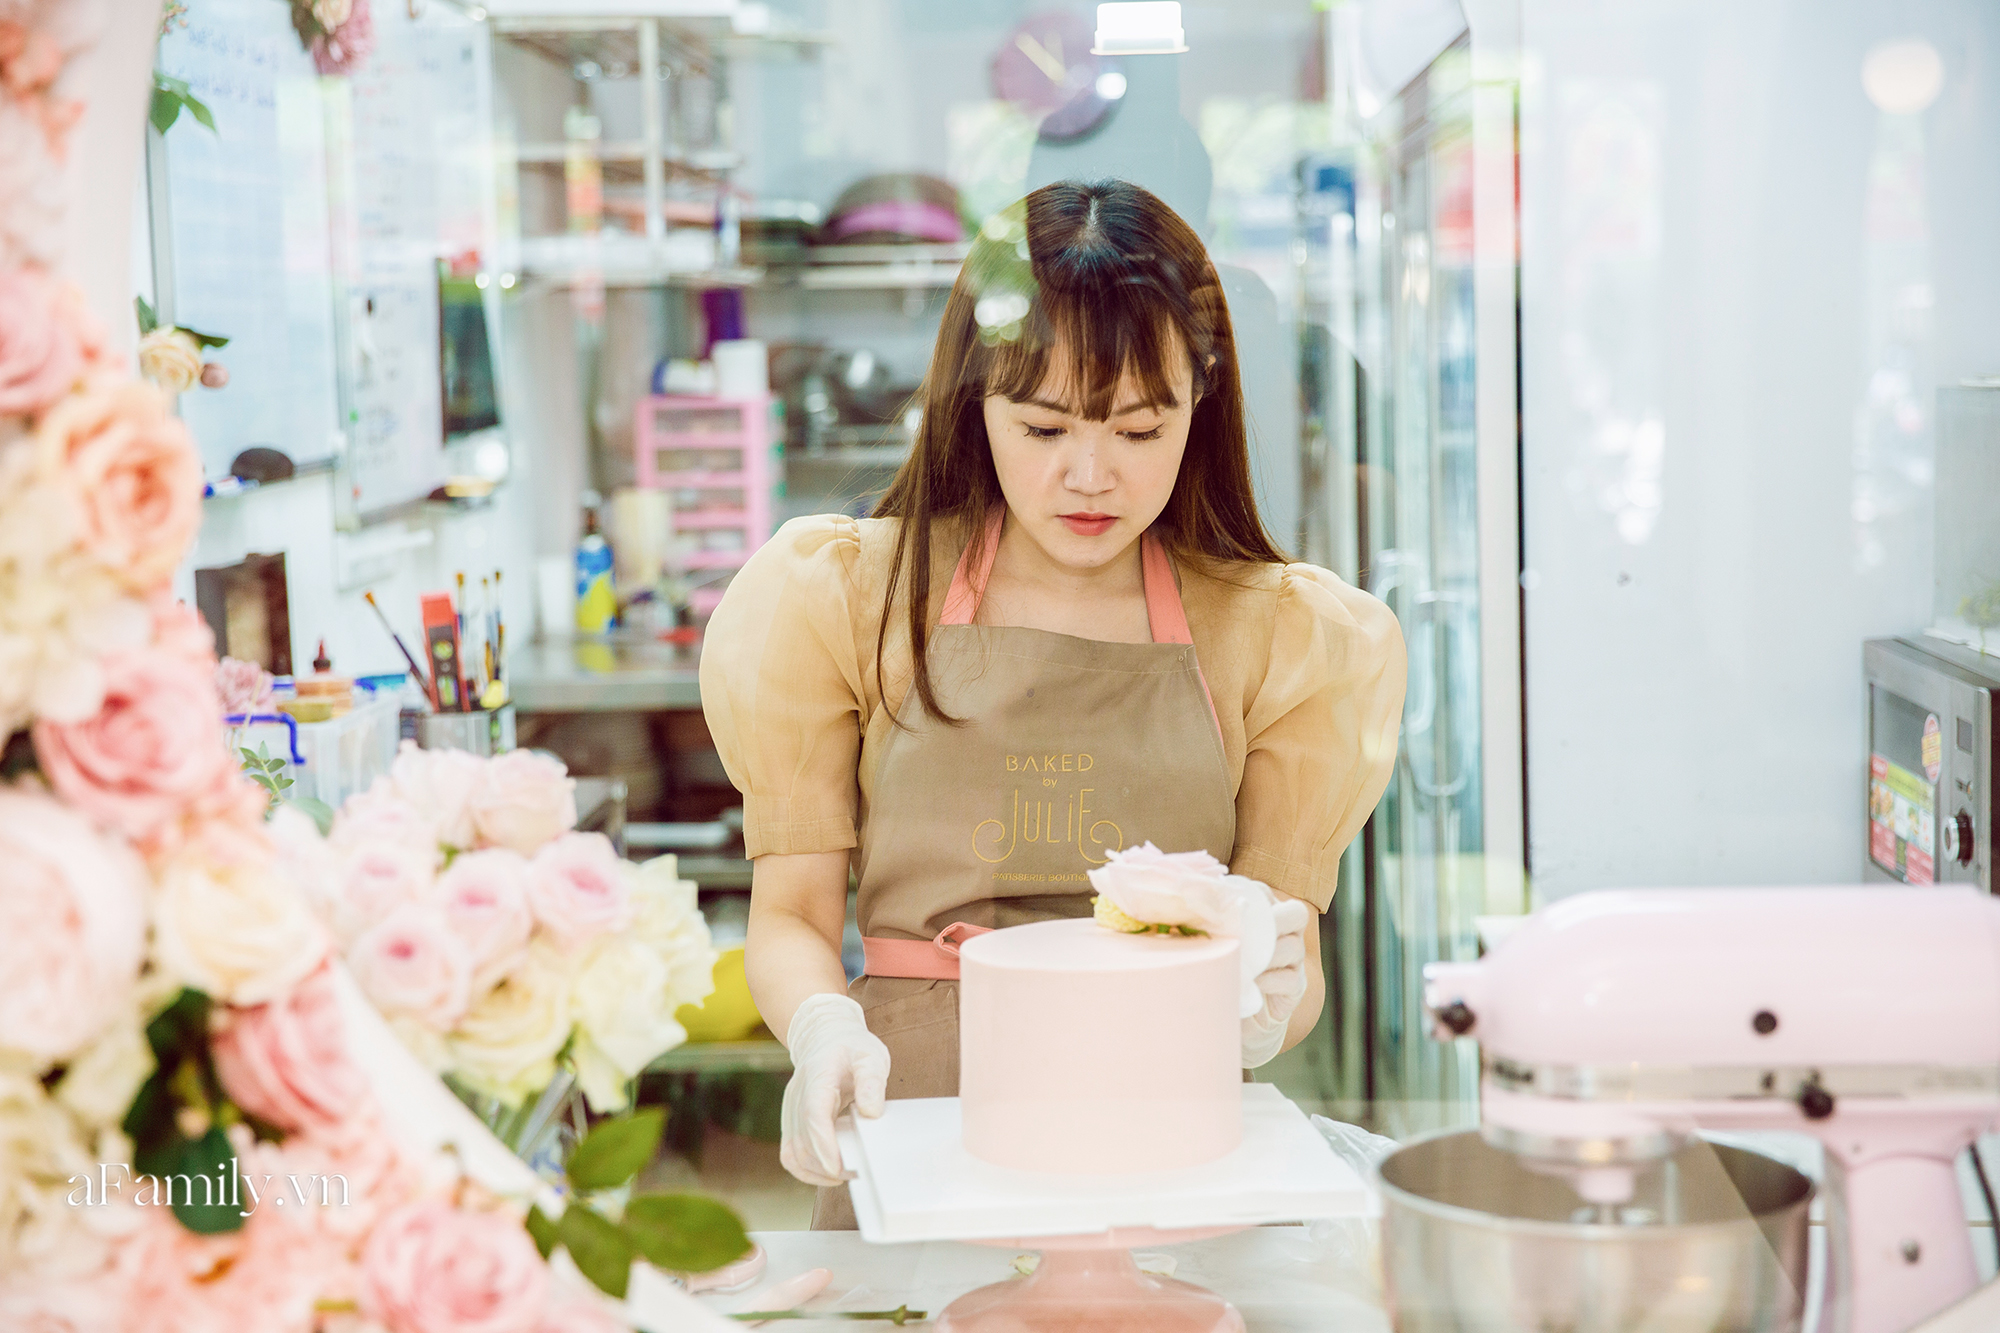 Julie Nguyễn - Cử nhân ở Anh với cú rẽ làm thợ bánh tại Hà Nội, 28 tuổi sở hữu tiệm bánh ngọt đình đám mà Ngọc Trinh tuyên bố có bay hơn 1.500km cũng phải ghé ăn bằng được - Ảnh 3.